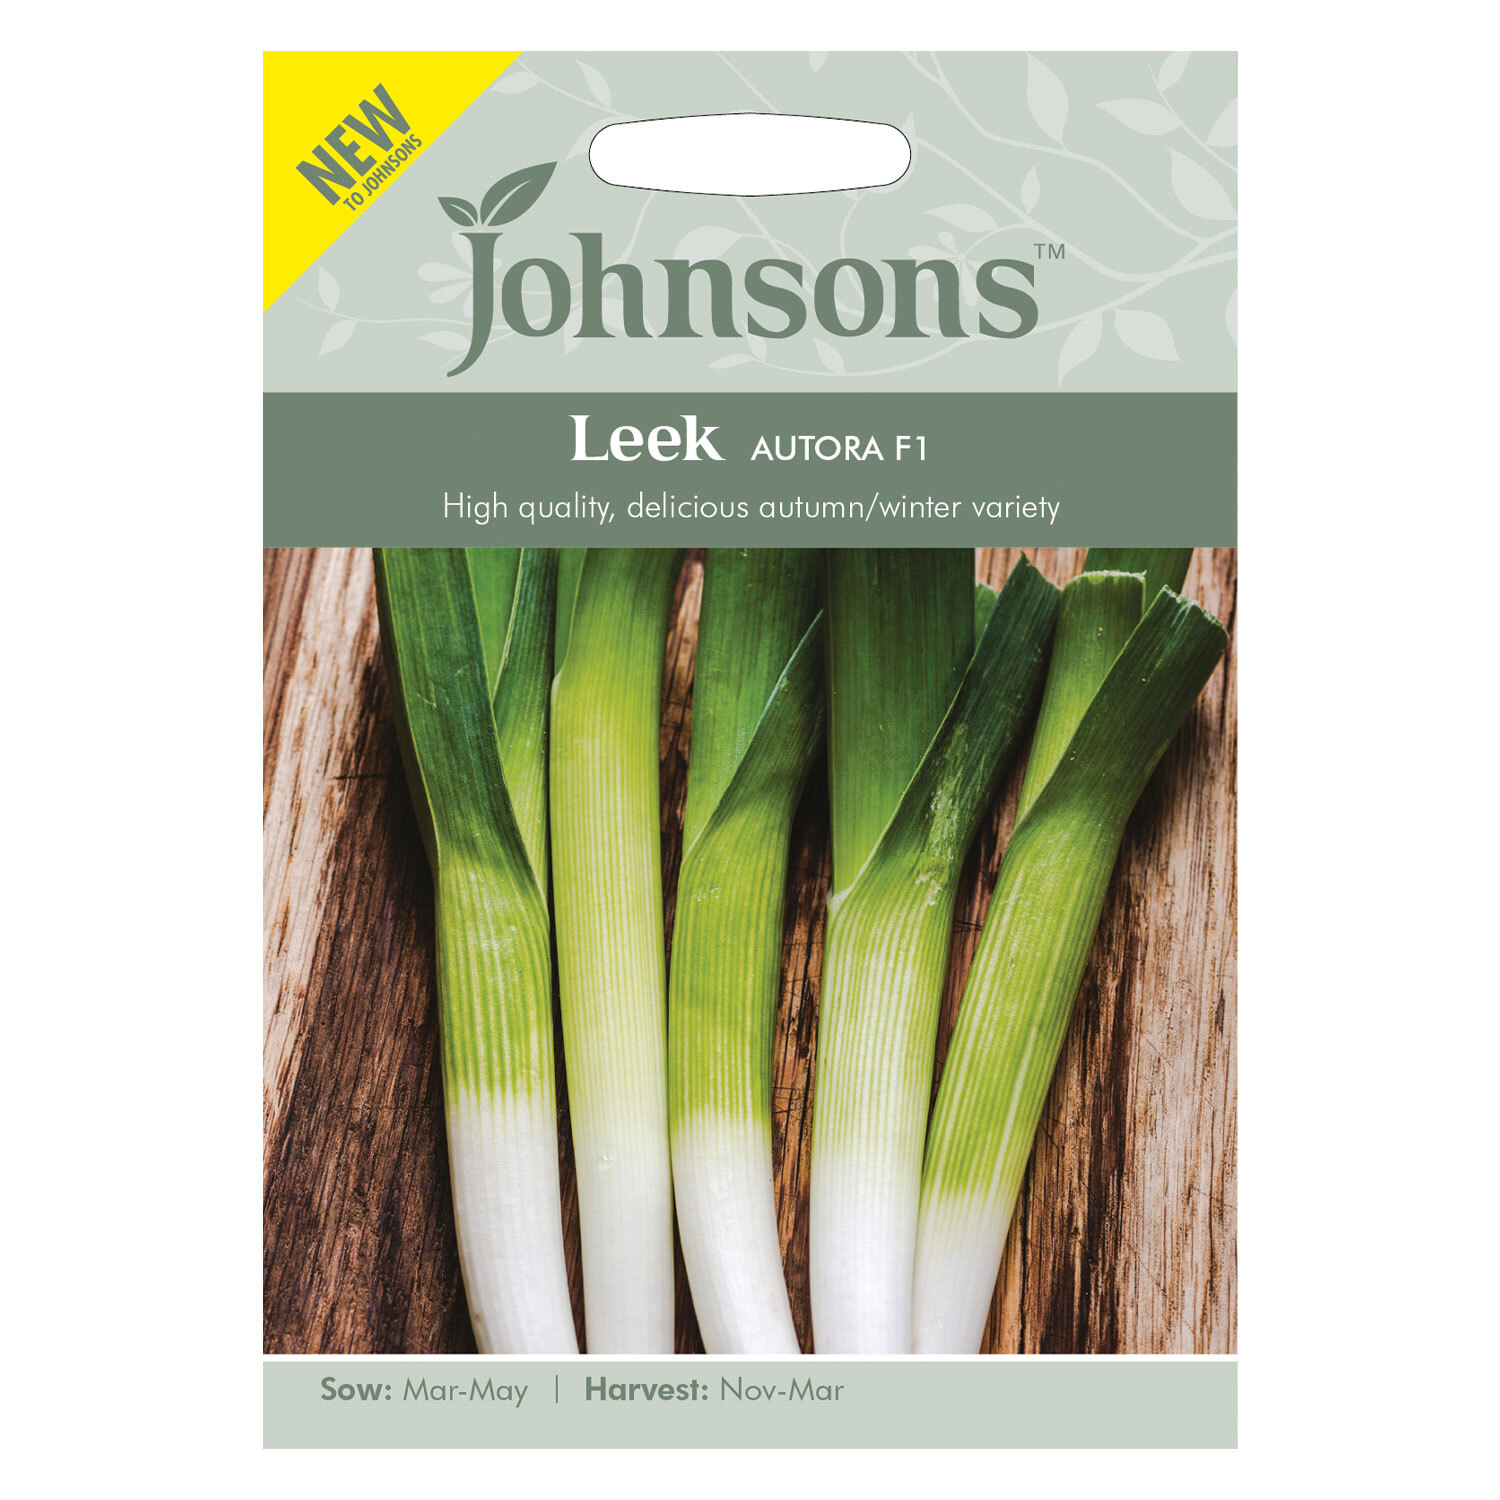 Johnsons Leek Autora F1 Vegetable Seeds Image 2